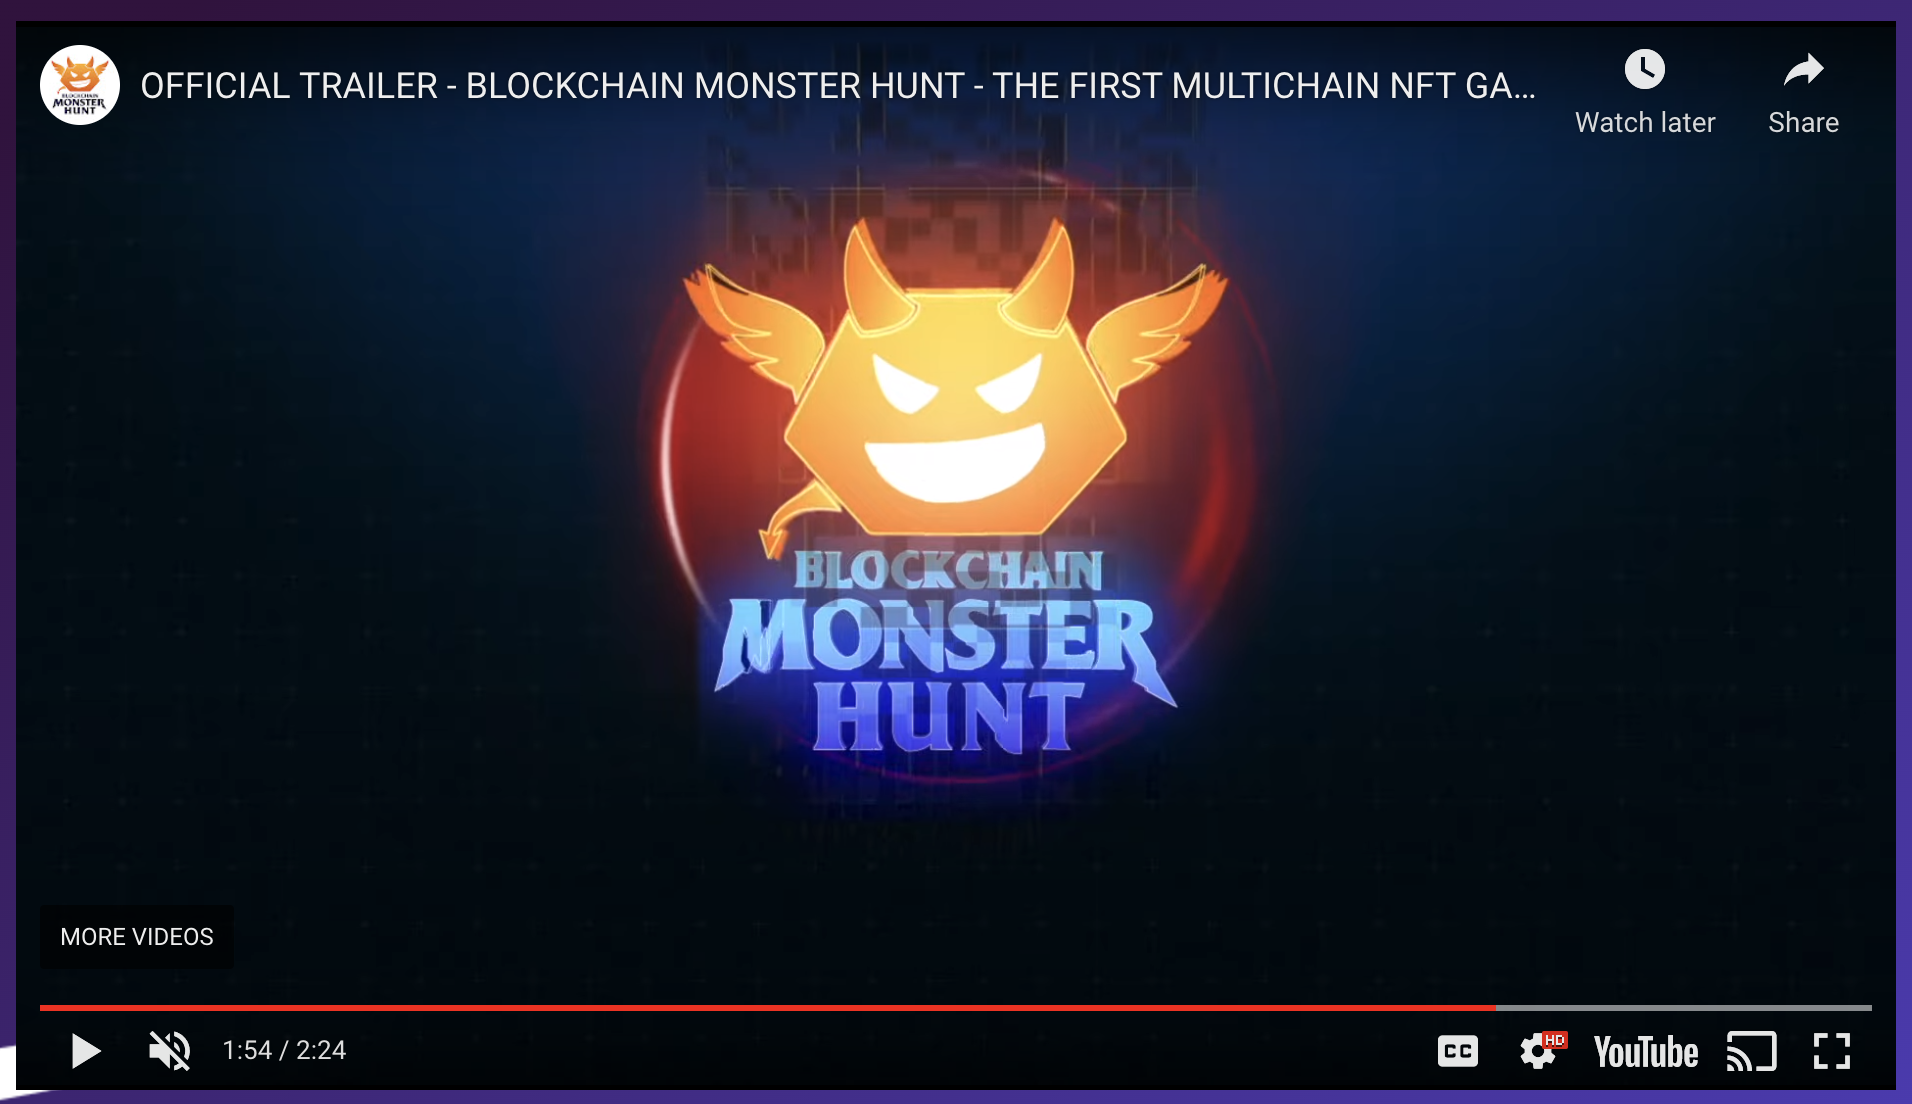 SS - Official Trailer Video / Blockchain Monster Hunt